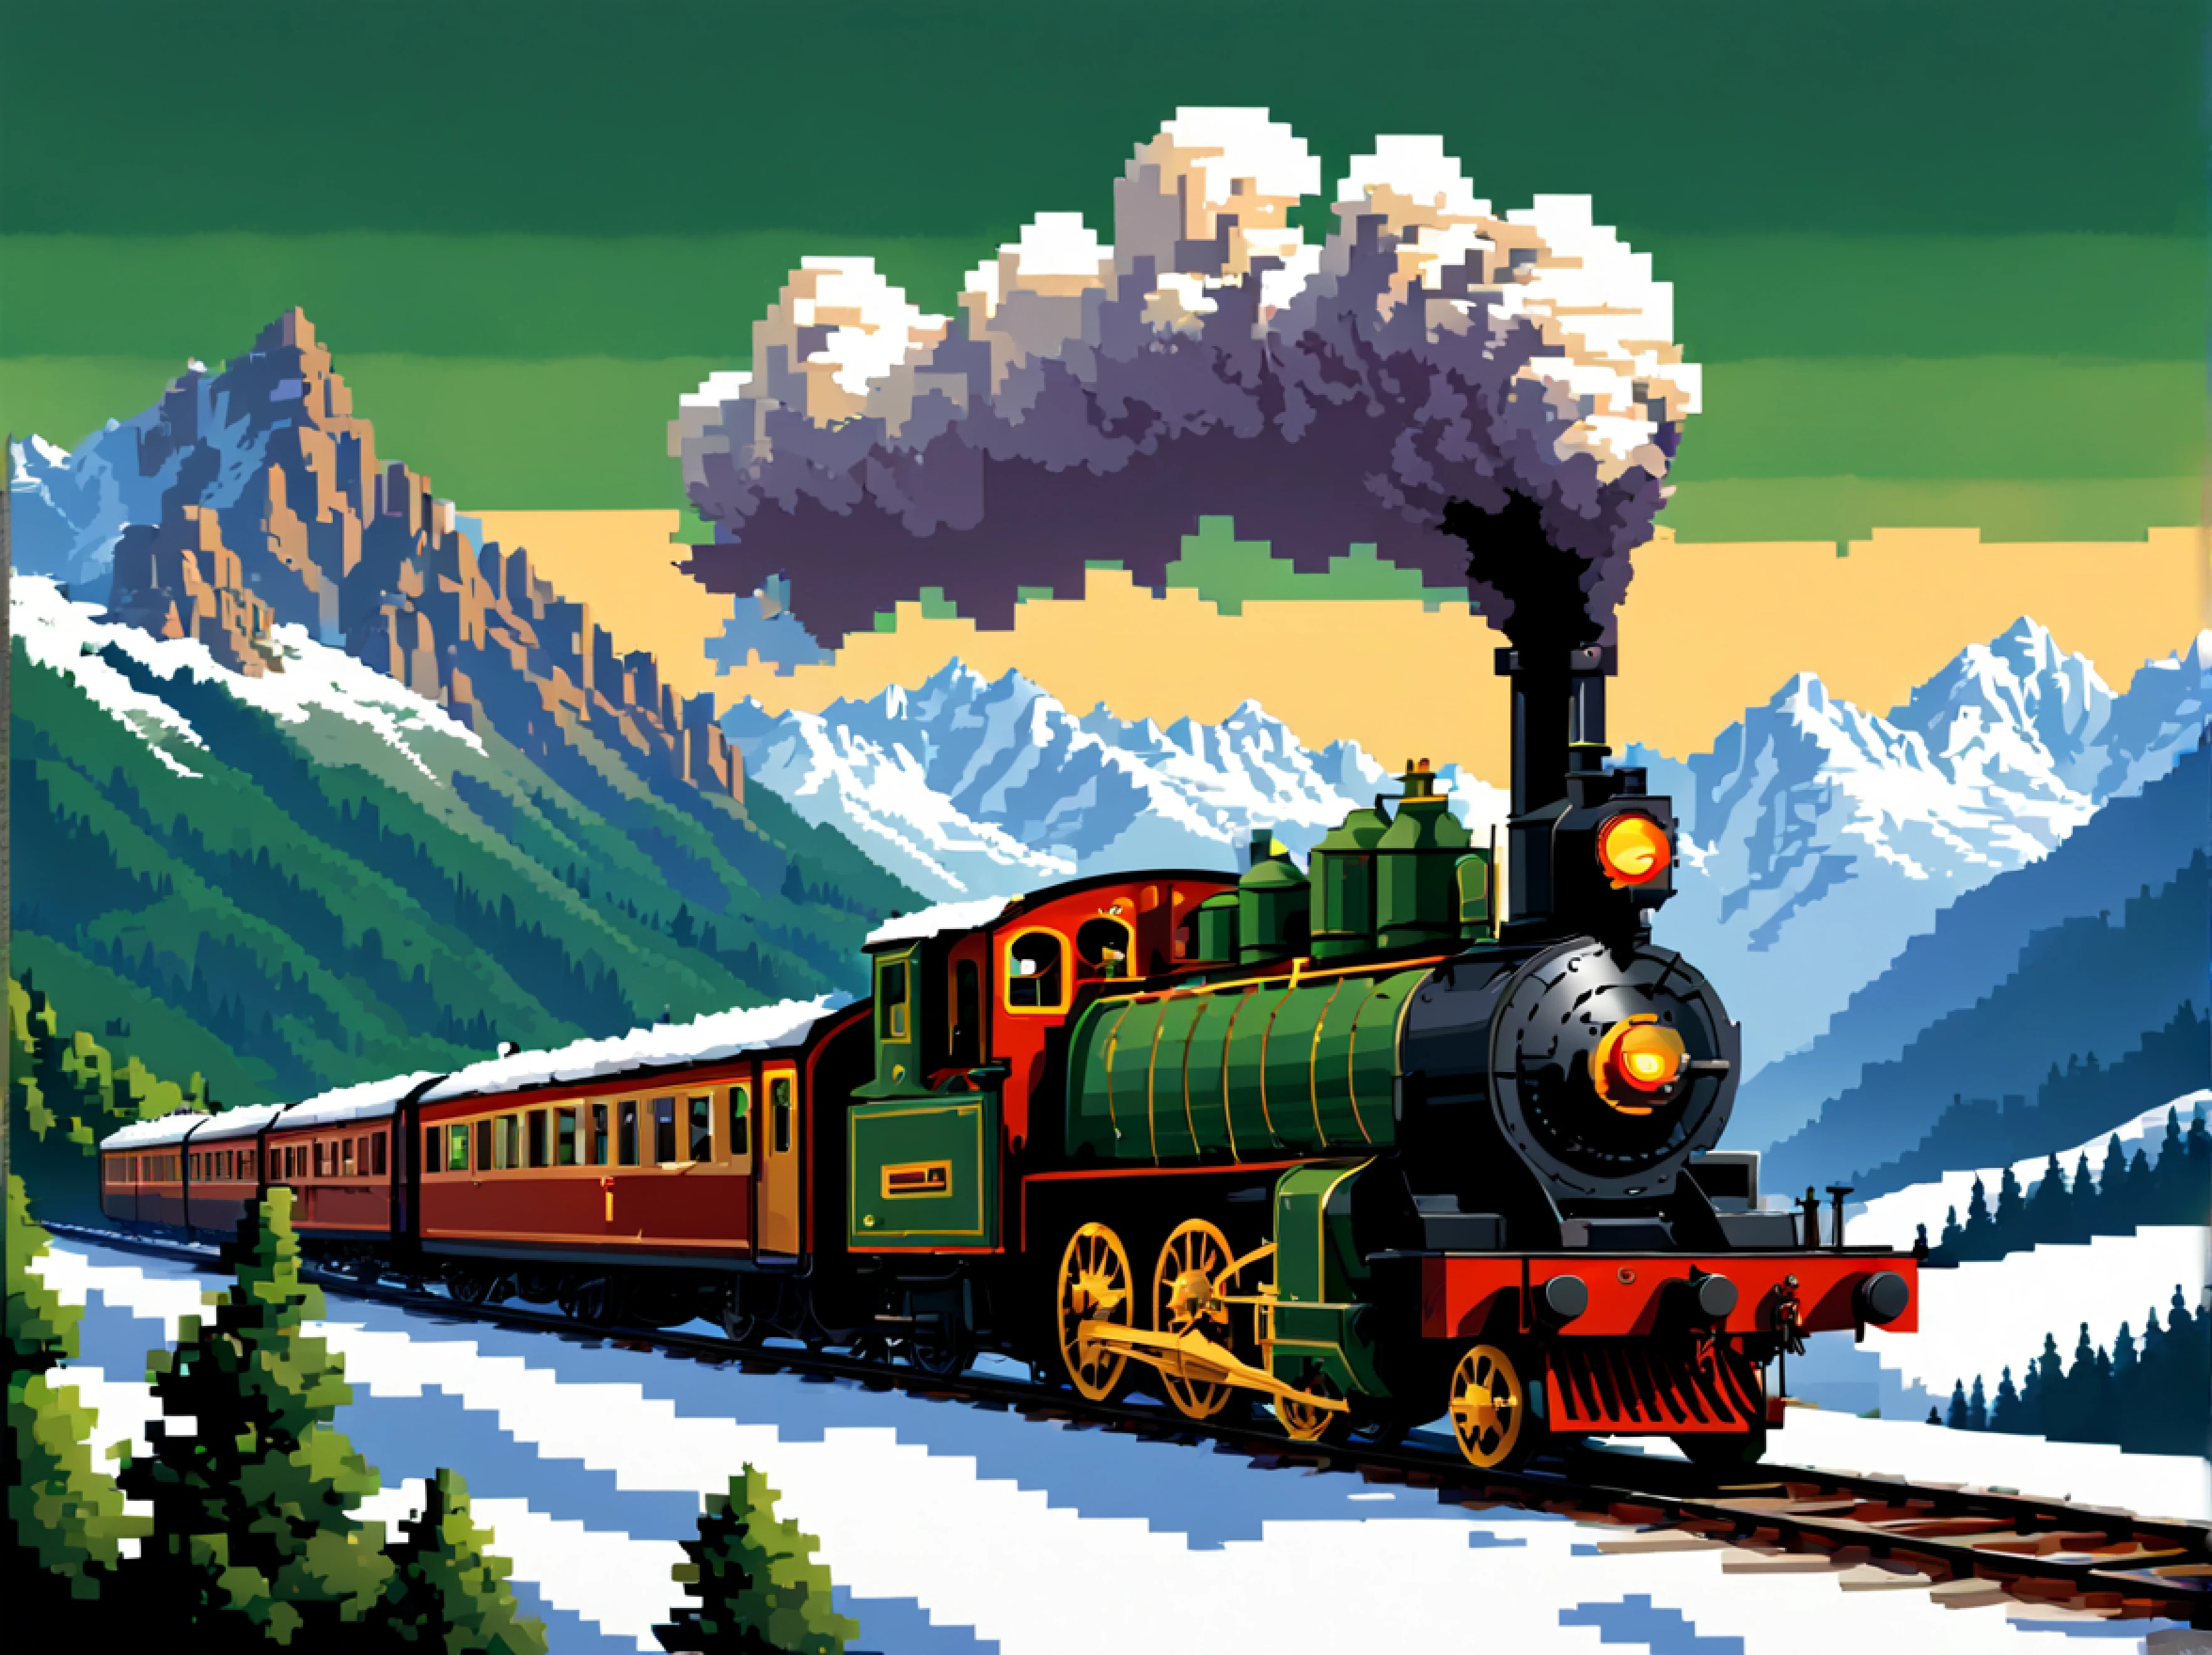 (ドット絵:1.3), (側面図:1.3), 1900 年代初頭のアルプスの絵のように美しい風景を優雅に駆け抜けるビンテージの蒸気機関車の鮮やかなシーン, 複雑なディテールで装飾された列車の細長い車体を展示します, 曲がりくねった道で速度を上げると車輪がリズミカルに回転します, 雄大なアルプスを背景に浮かび上がらせましょう, 雪を頂いた山頂と緑豊かな渓谷は、蒸気機関車という機械の驚異との息を呑むようなコントラストを生み出しています。, この時代を特徴づけた懐かしさと冒険心を凝縮, 太陽の金色の光が、磨かれた金属の表面で踊ります, この時代を超越したシーンに命を吹き込む, 過ぎ去った時代の本質を捉える